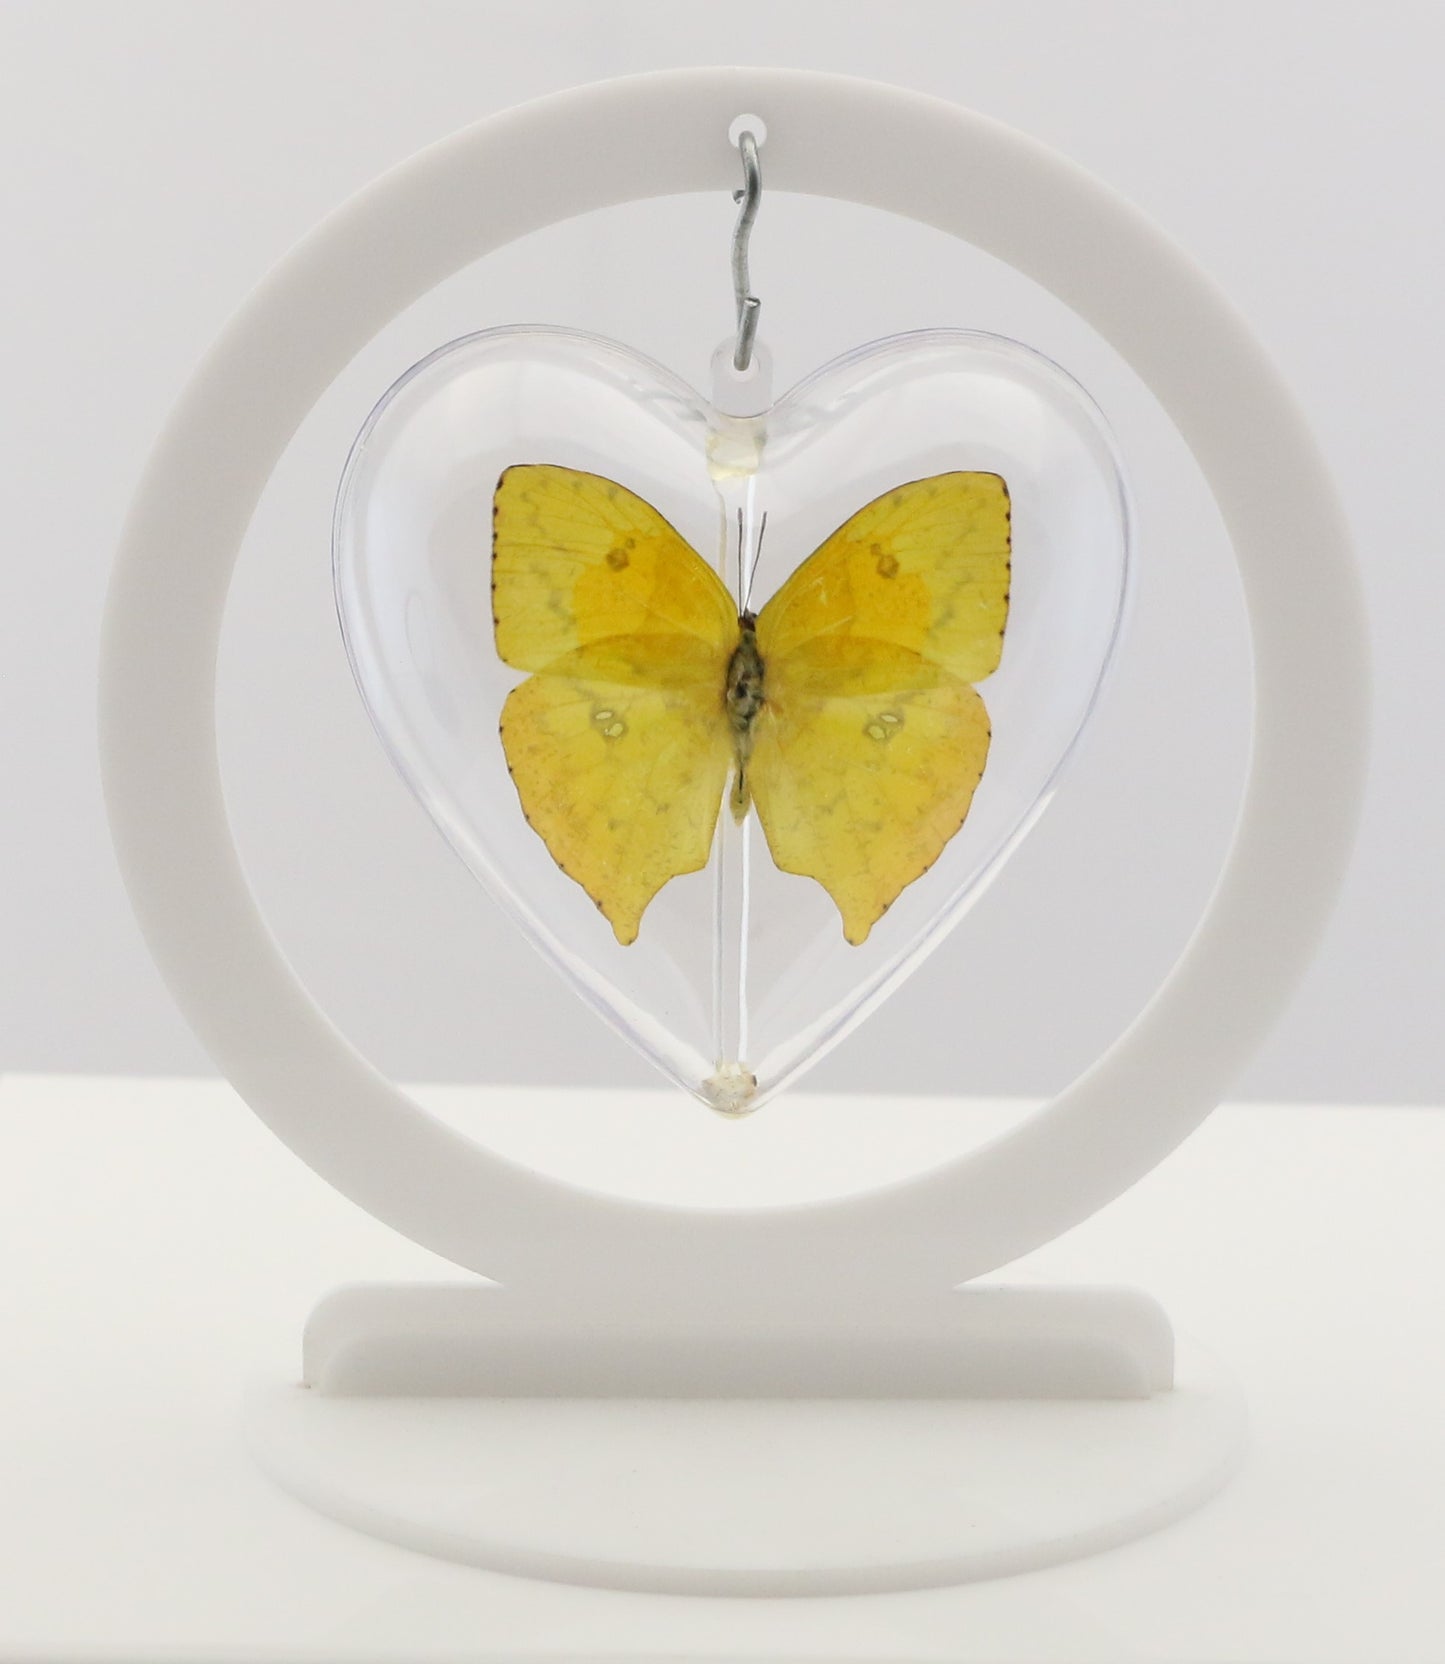 750800 - Butterfly Bubble - Med. - Heart Shape - Tailed Sulphur Butterfly